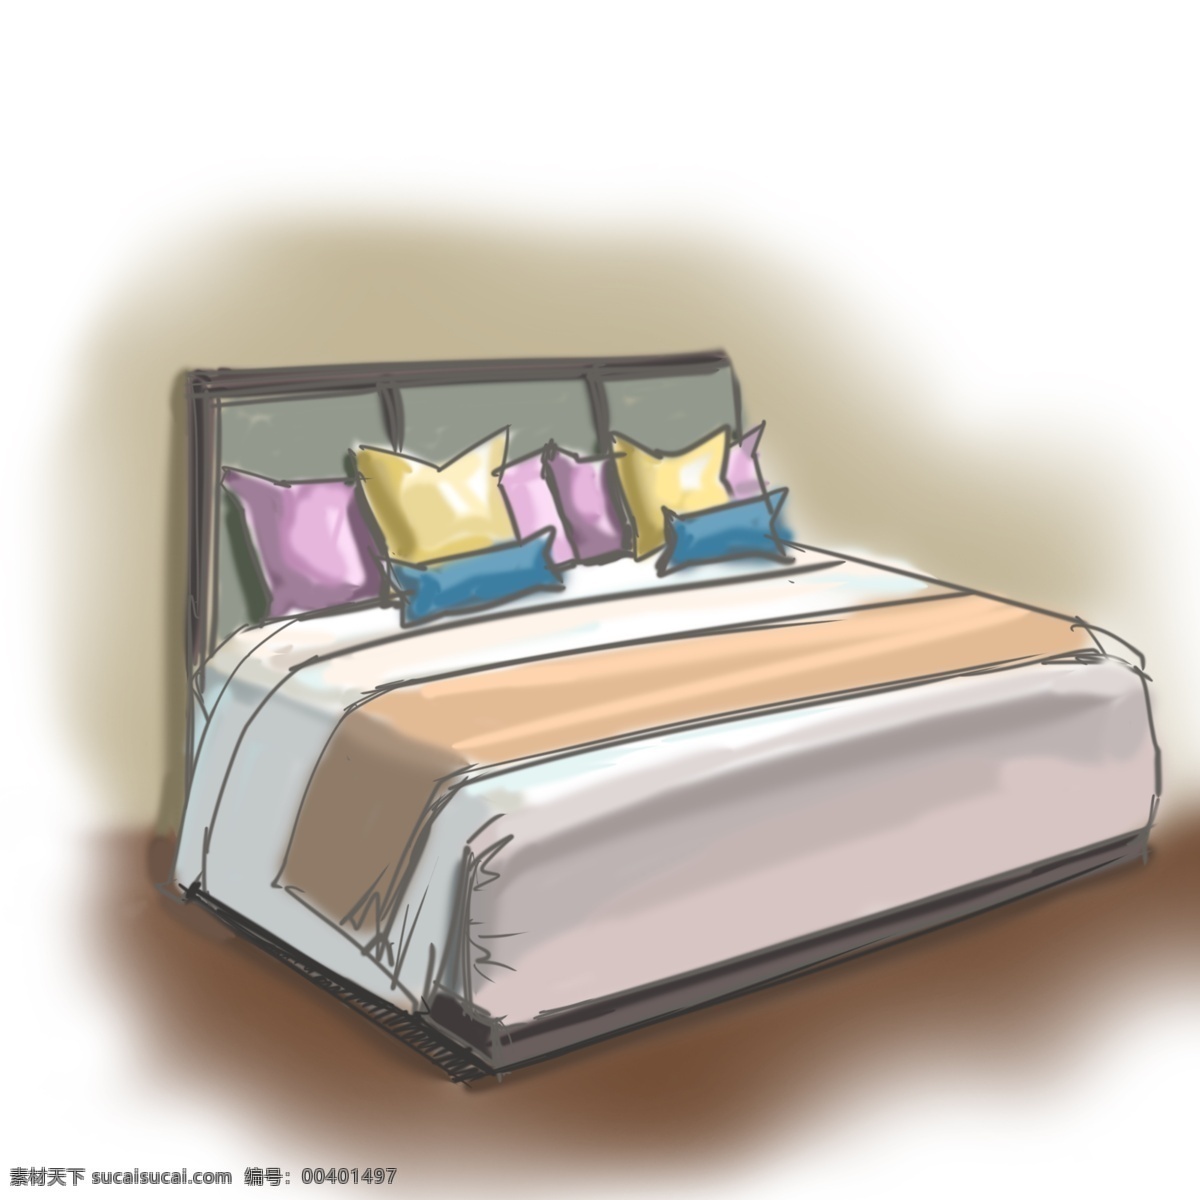 家具 床铺 枕头 卡通 手绘 被子 简约风格 装修 木头 枕巾 豪华家居 居住 房间 卡通风格手绘